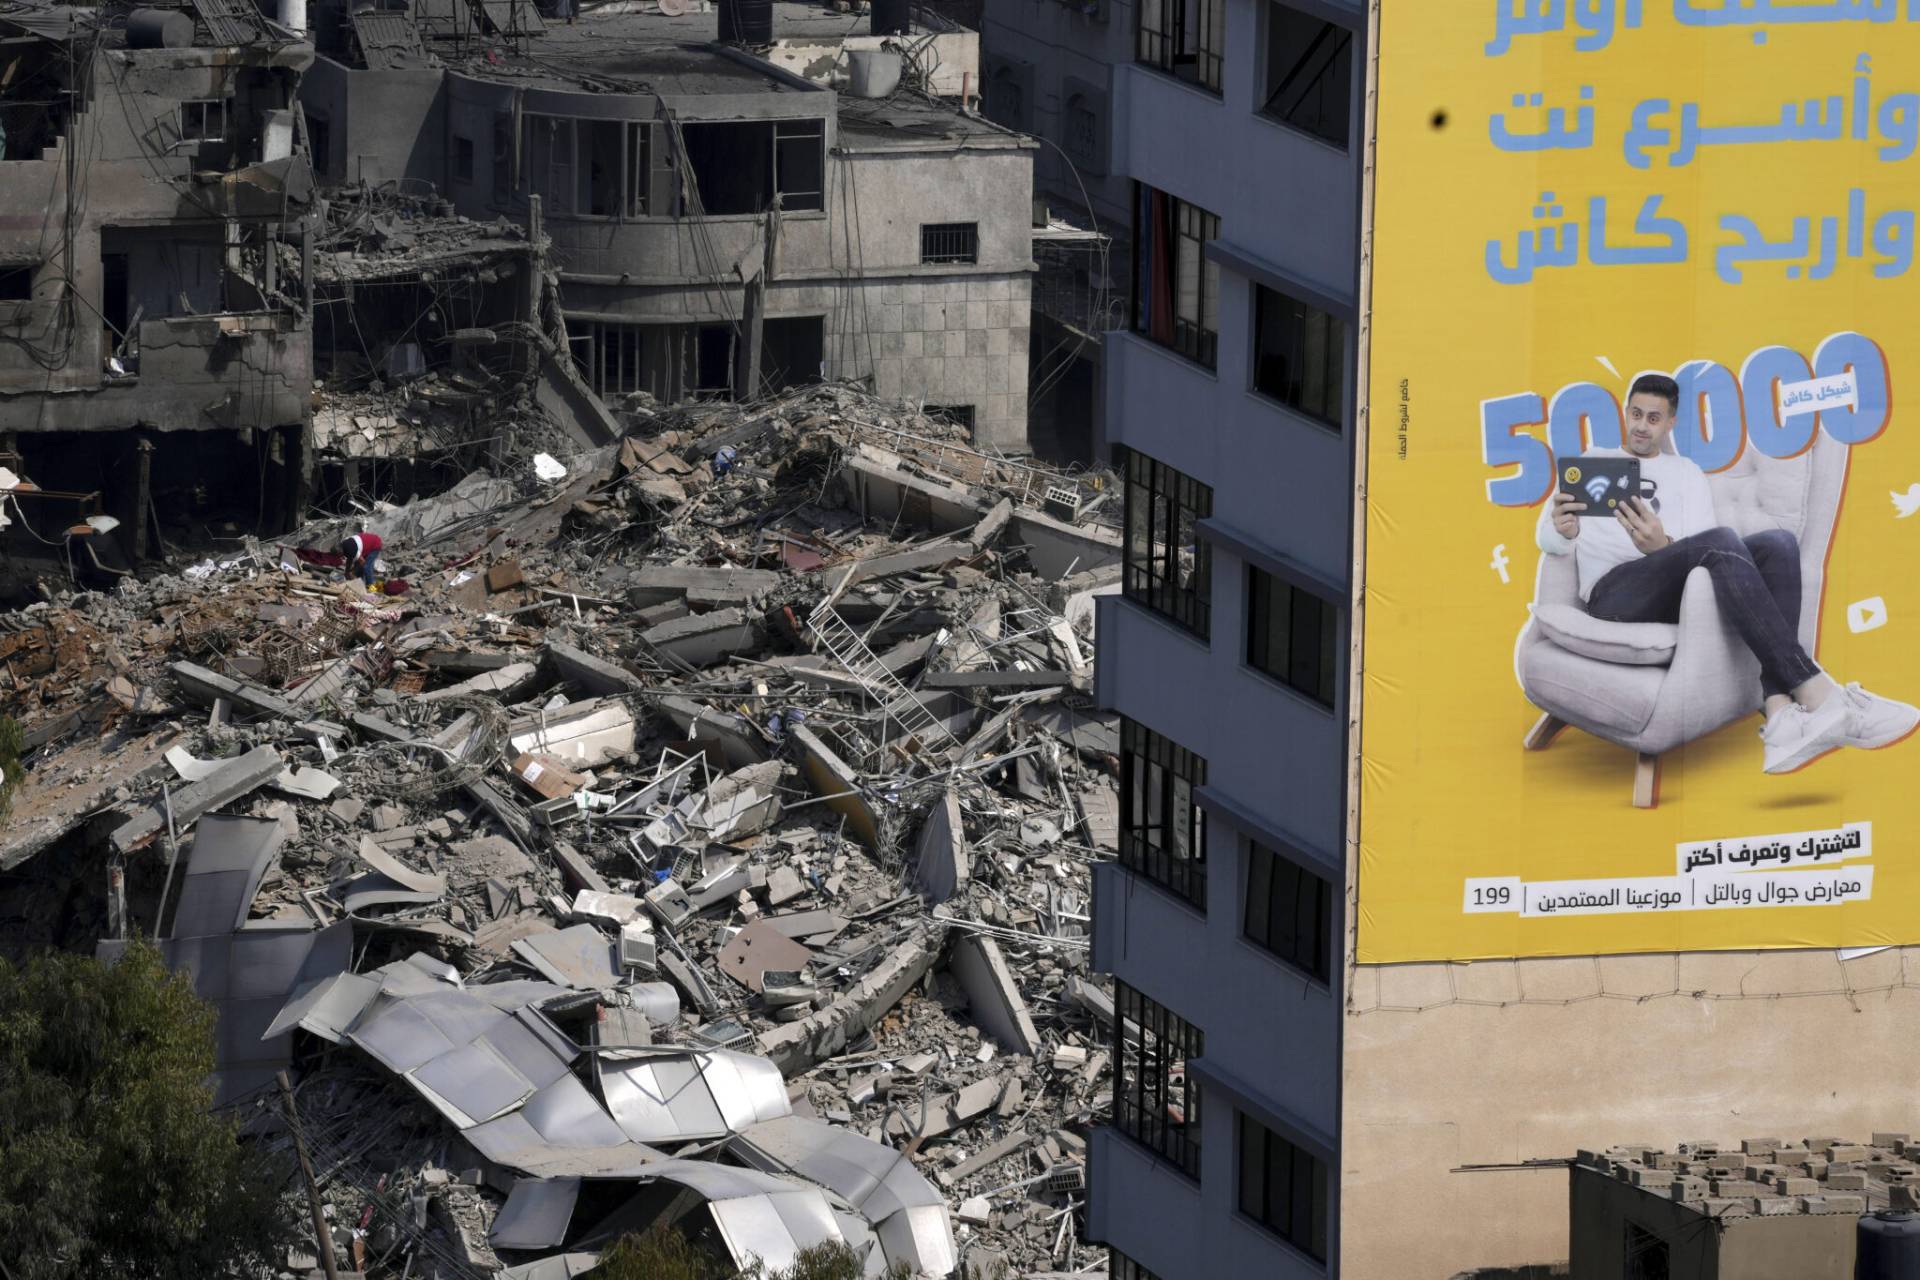 Μ. Ανατολή: Σχεδόν 1.000 τα θύματα από την επίθεση της Χαμάς στο Ισραήλ – Χιλιάδες τραυματίες, δραματικές ώρες